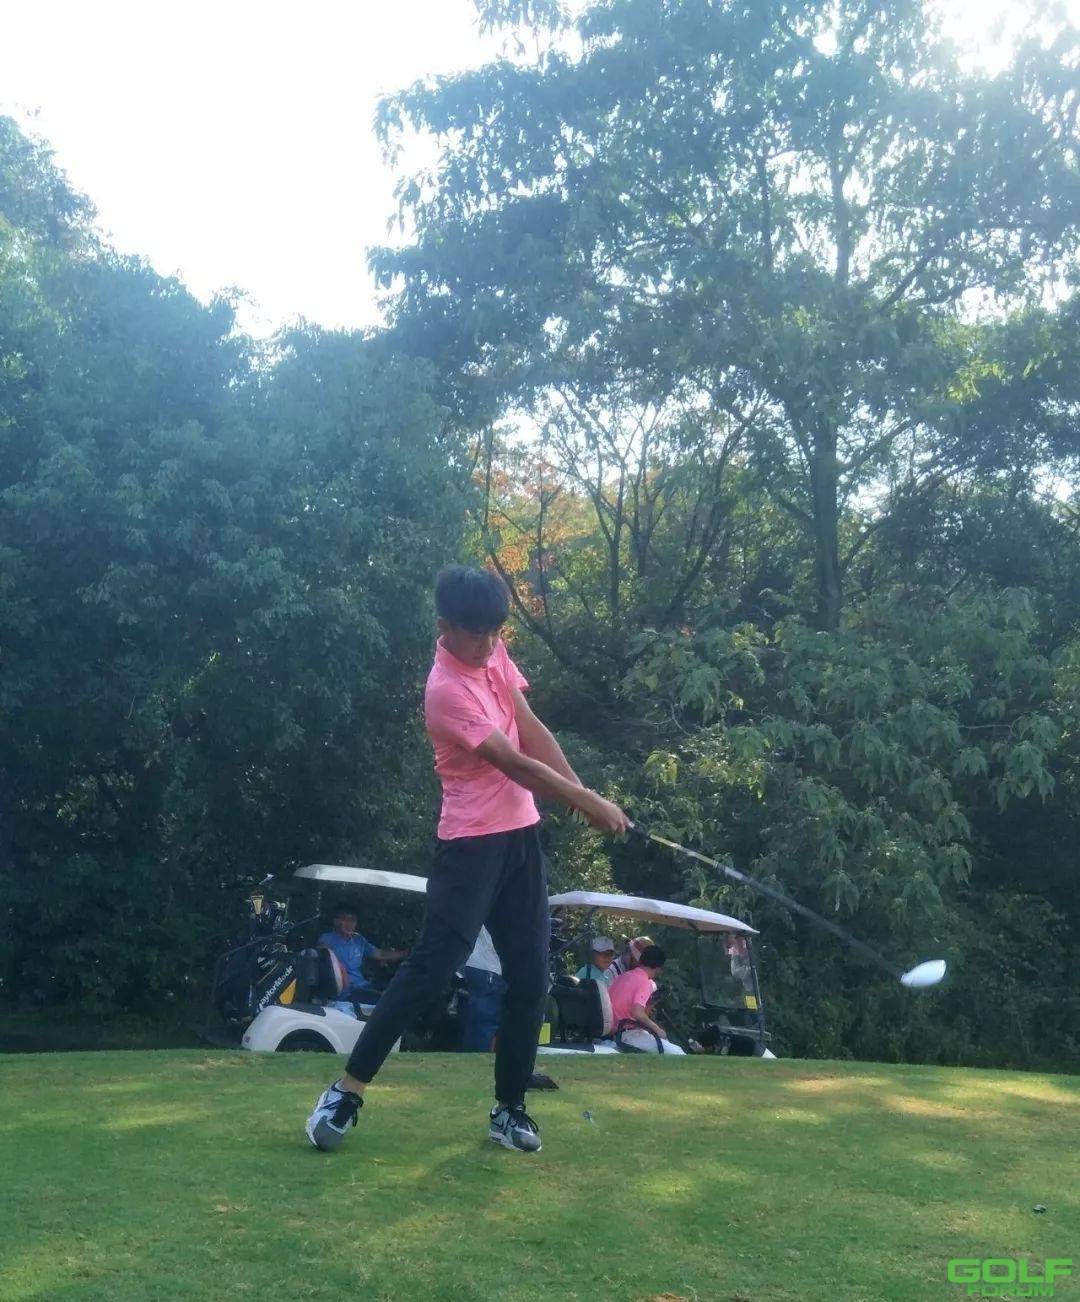 2018年江西省青少年高尔夫球巡回赛-第四站收杆